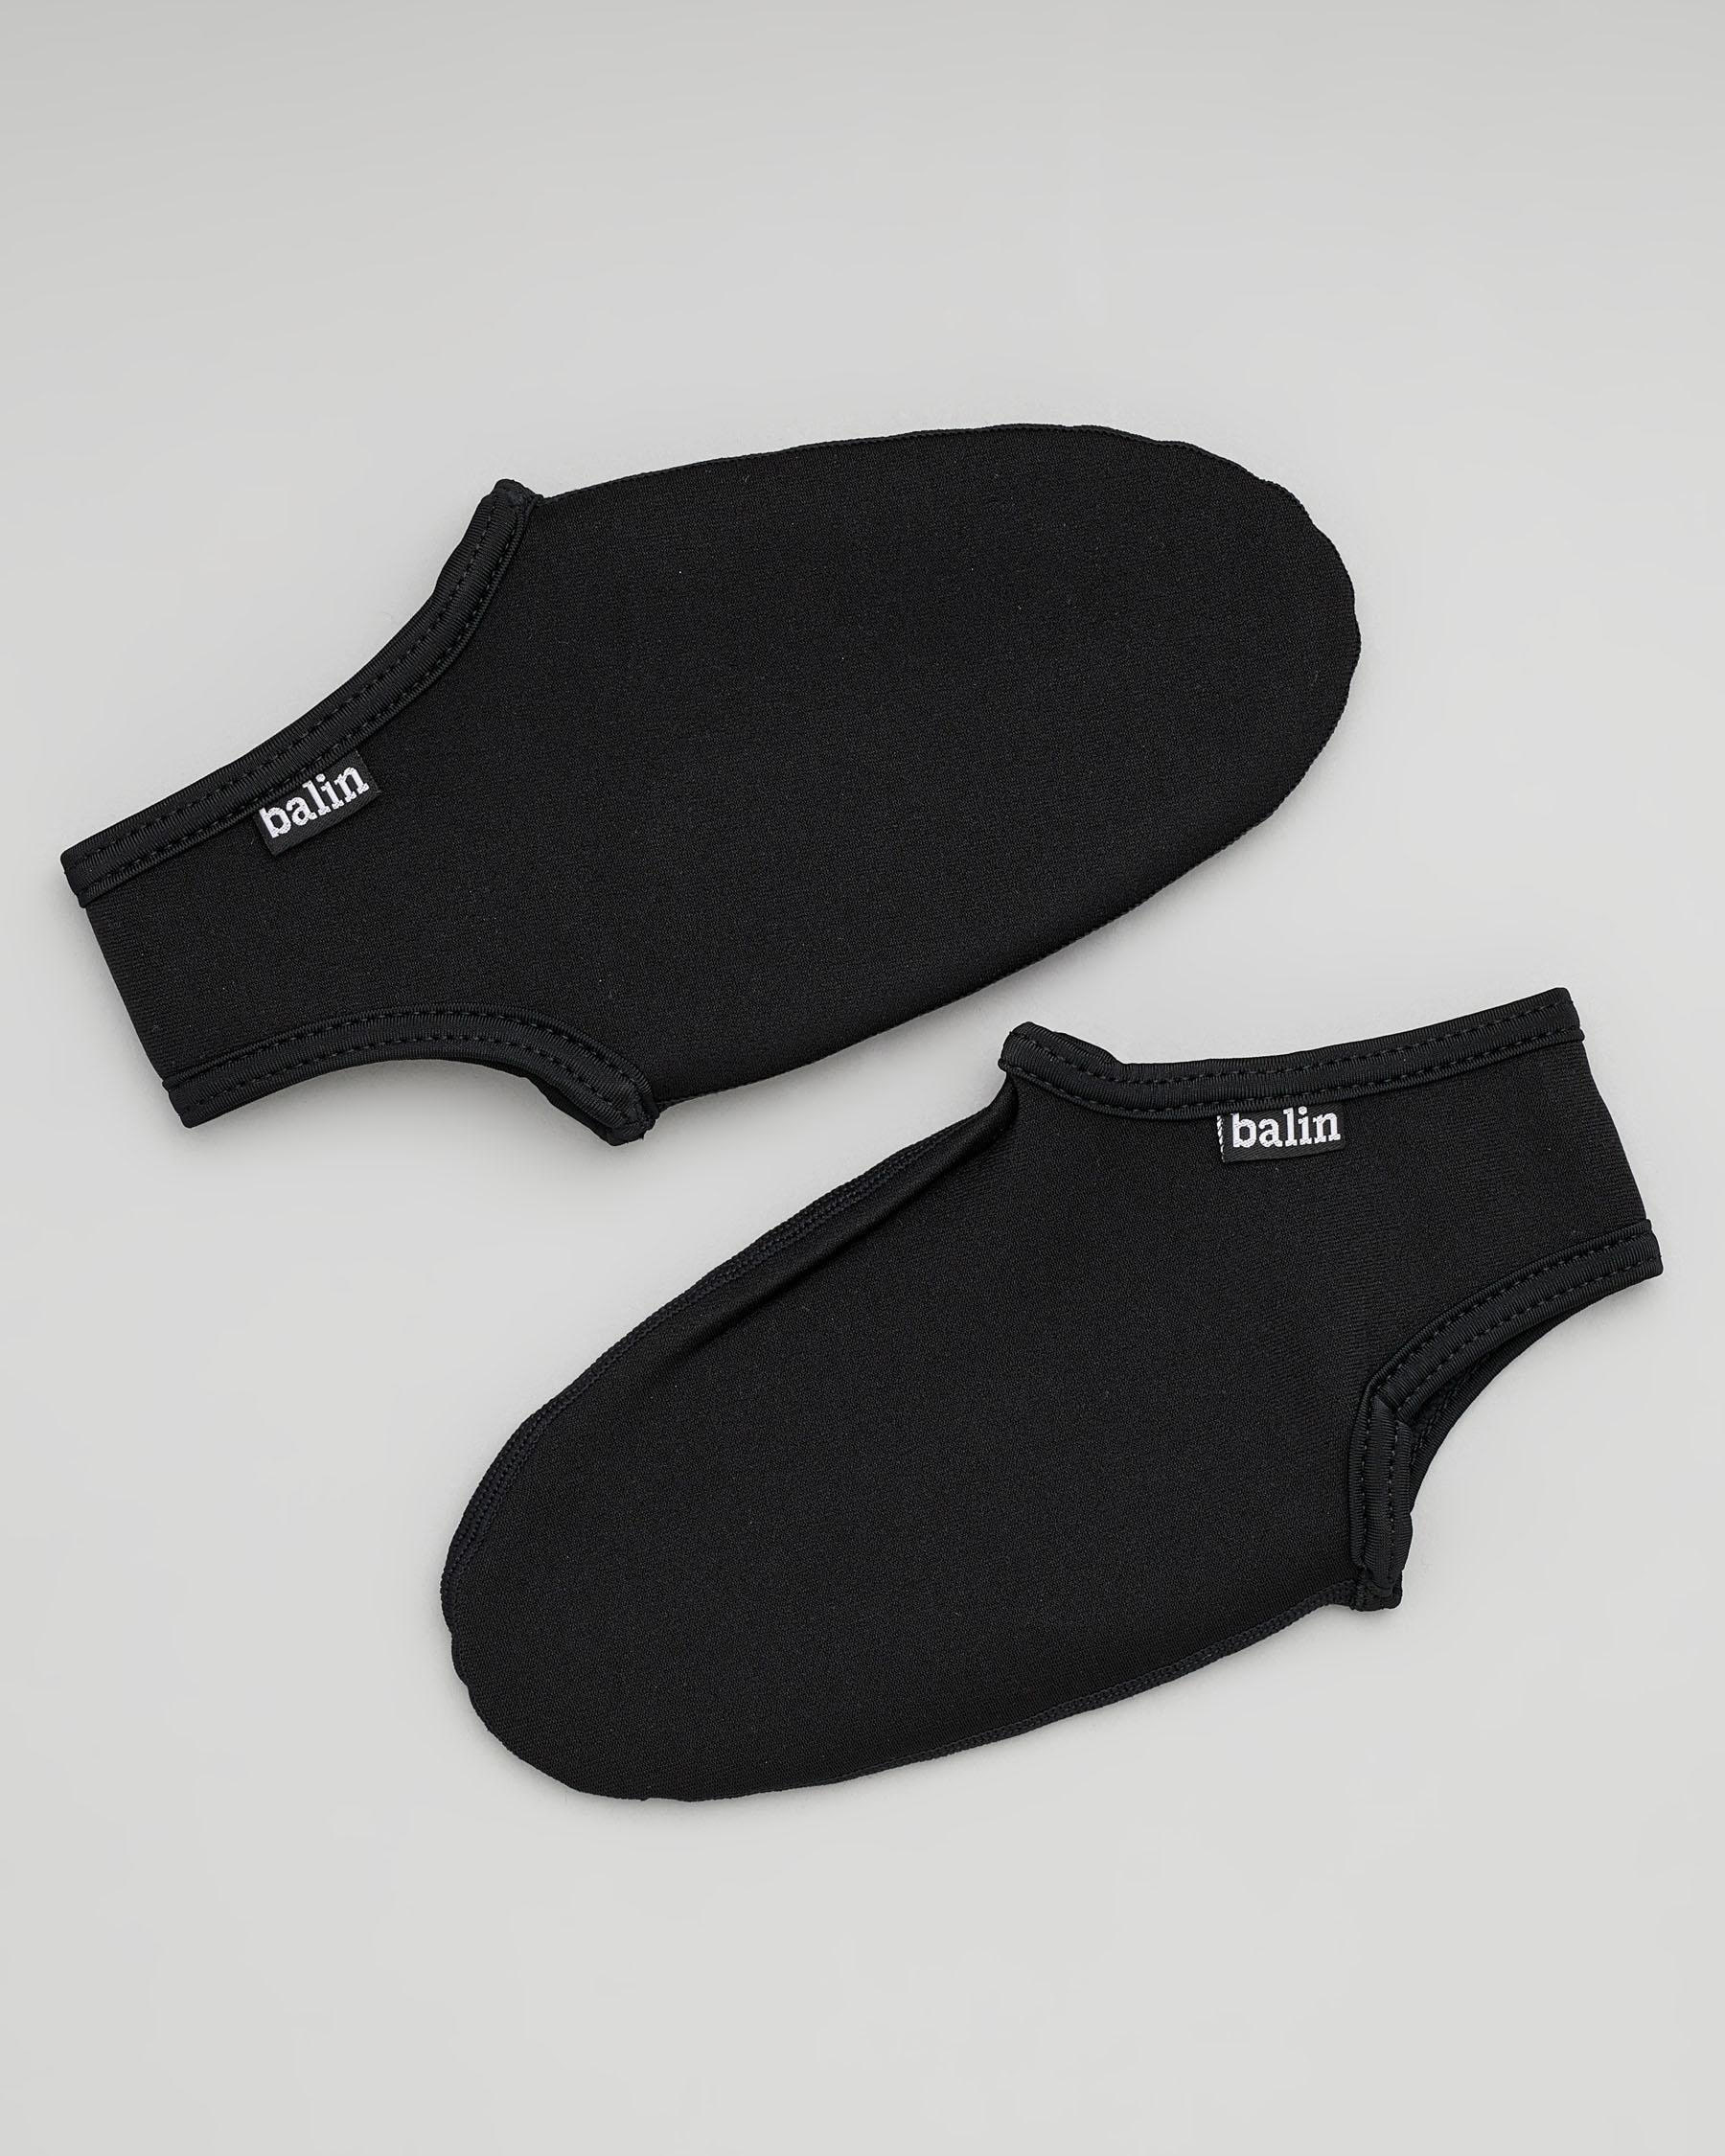 Balin Lo-cut Neoprene Fin Socks In Black - Fast Shipping & Easy Returns ...